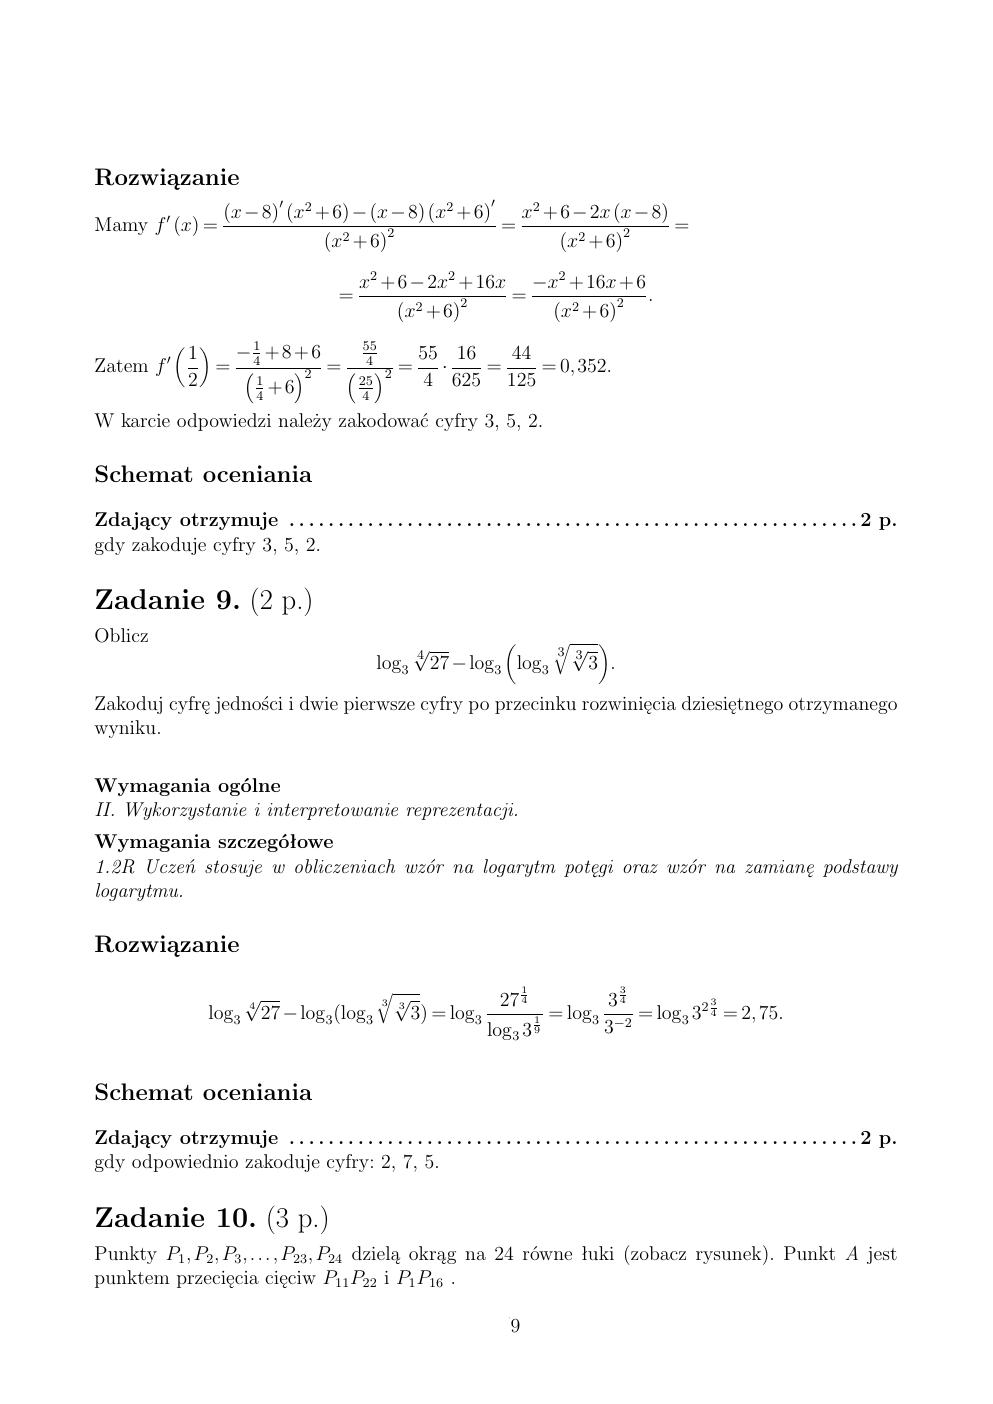 zasady oceniania - odpowiedzi - matematyka rozszerzony - matura 2015 przykładowa-09